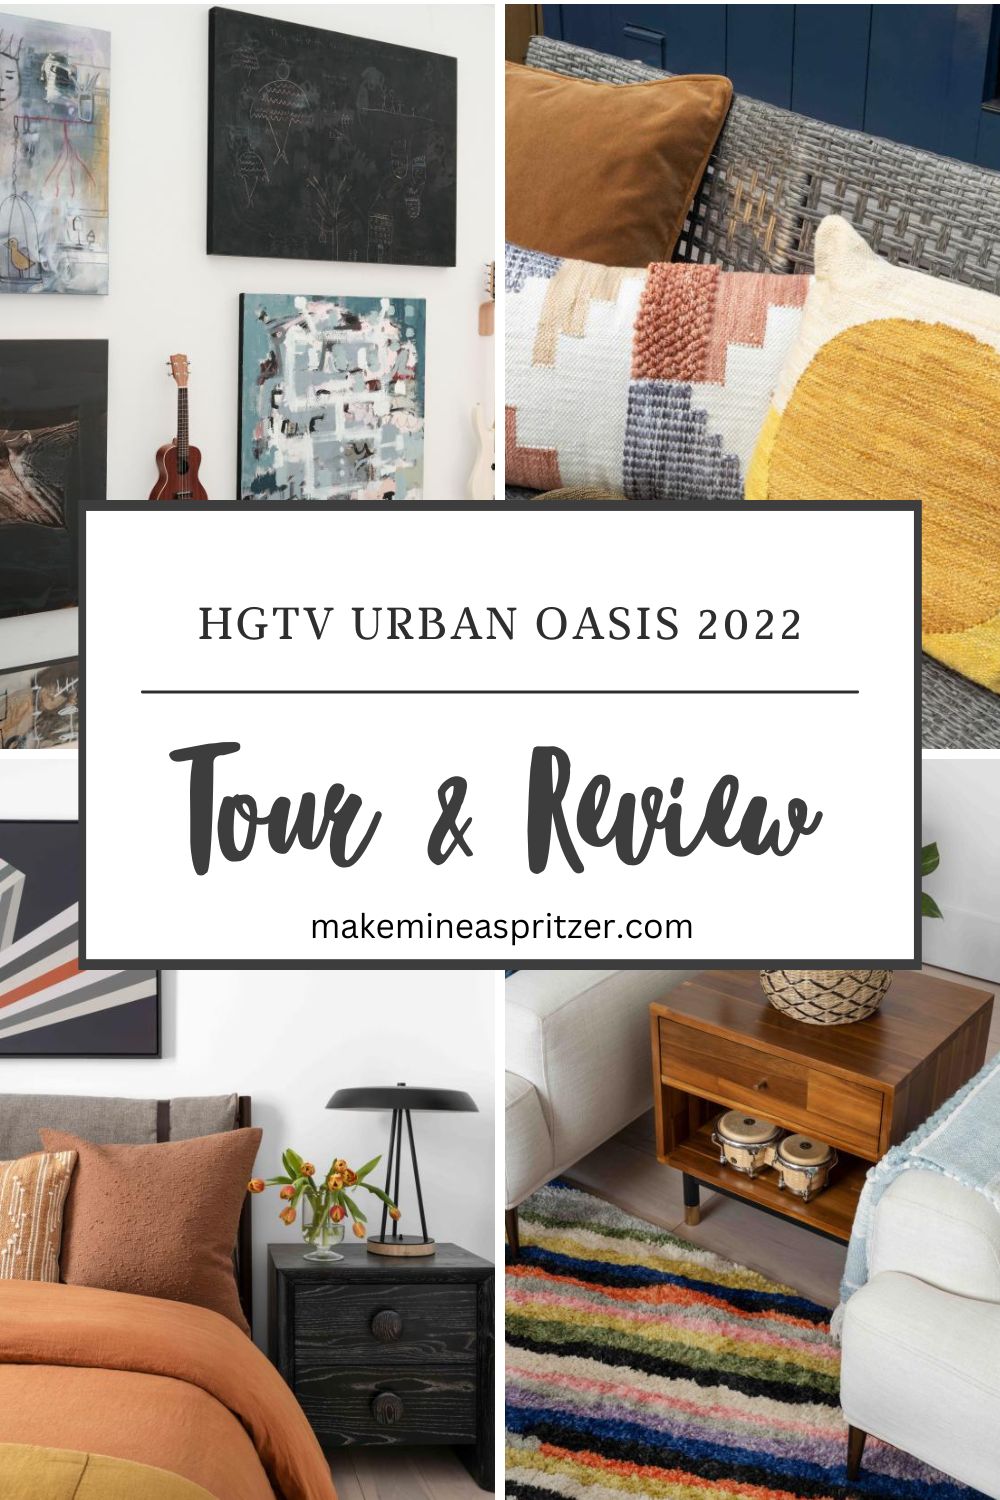 HGTV Urban Oasis 2022 Pin Collage.